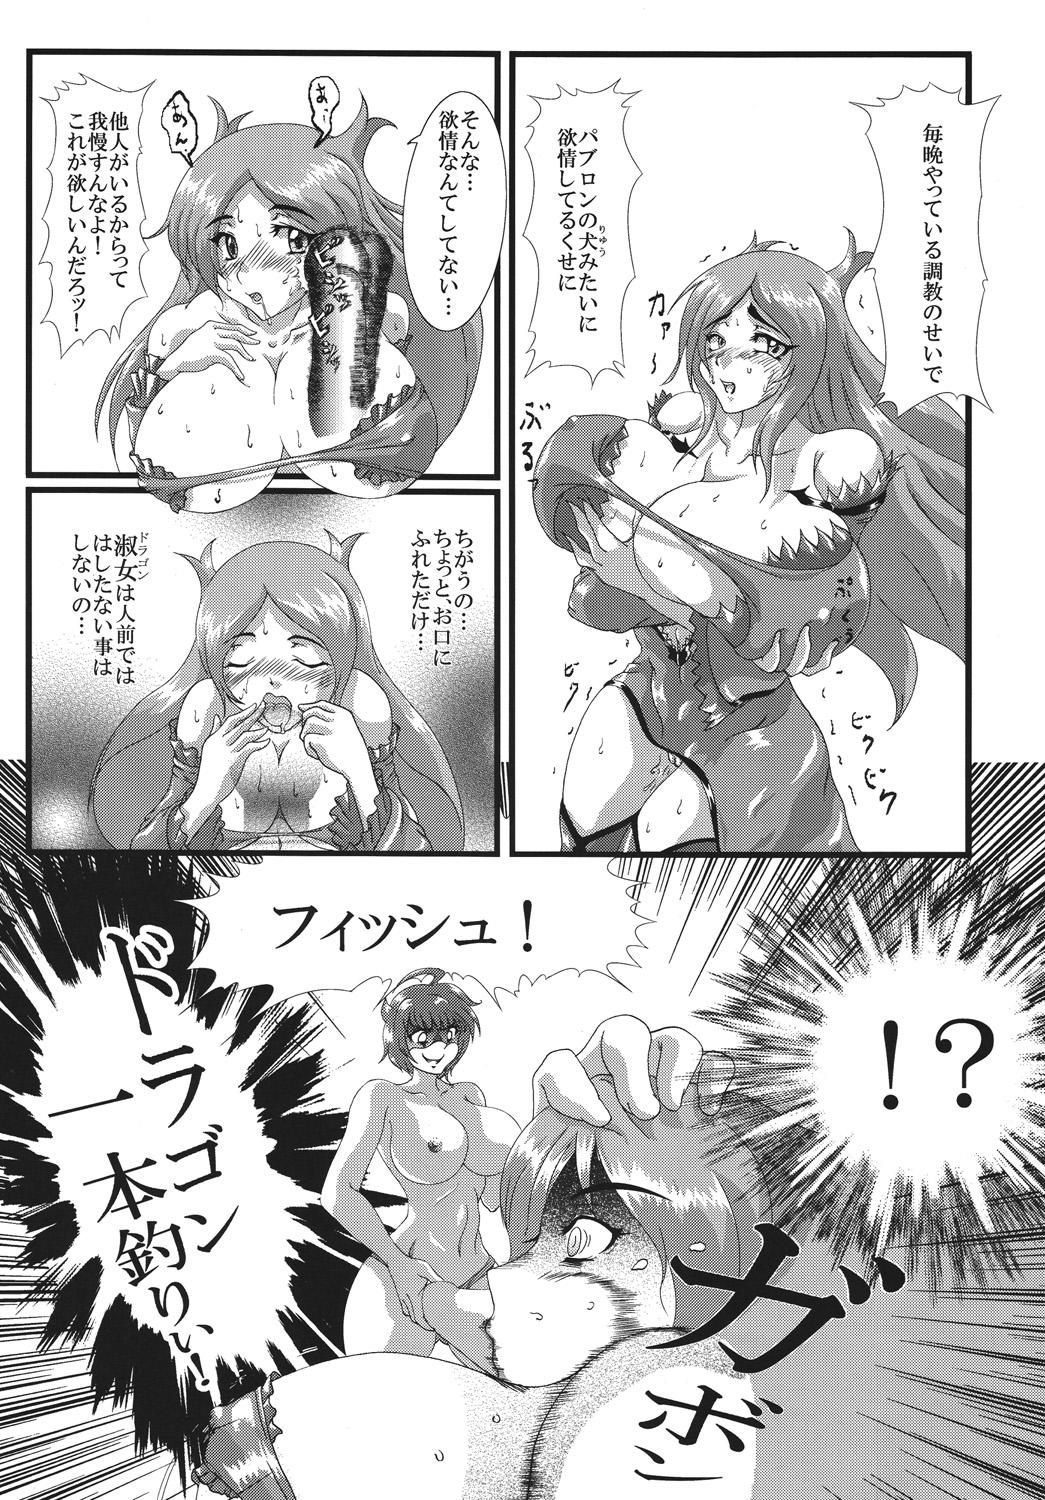 Vergon Doragon no aru kurashi - Dragonaut Fucking Girls - Page 6